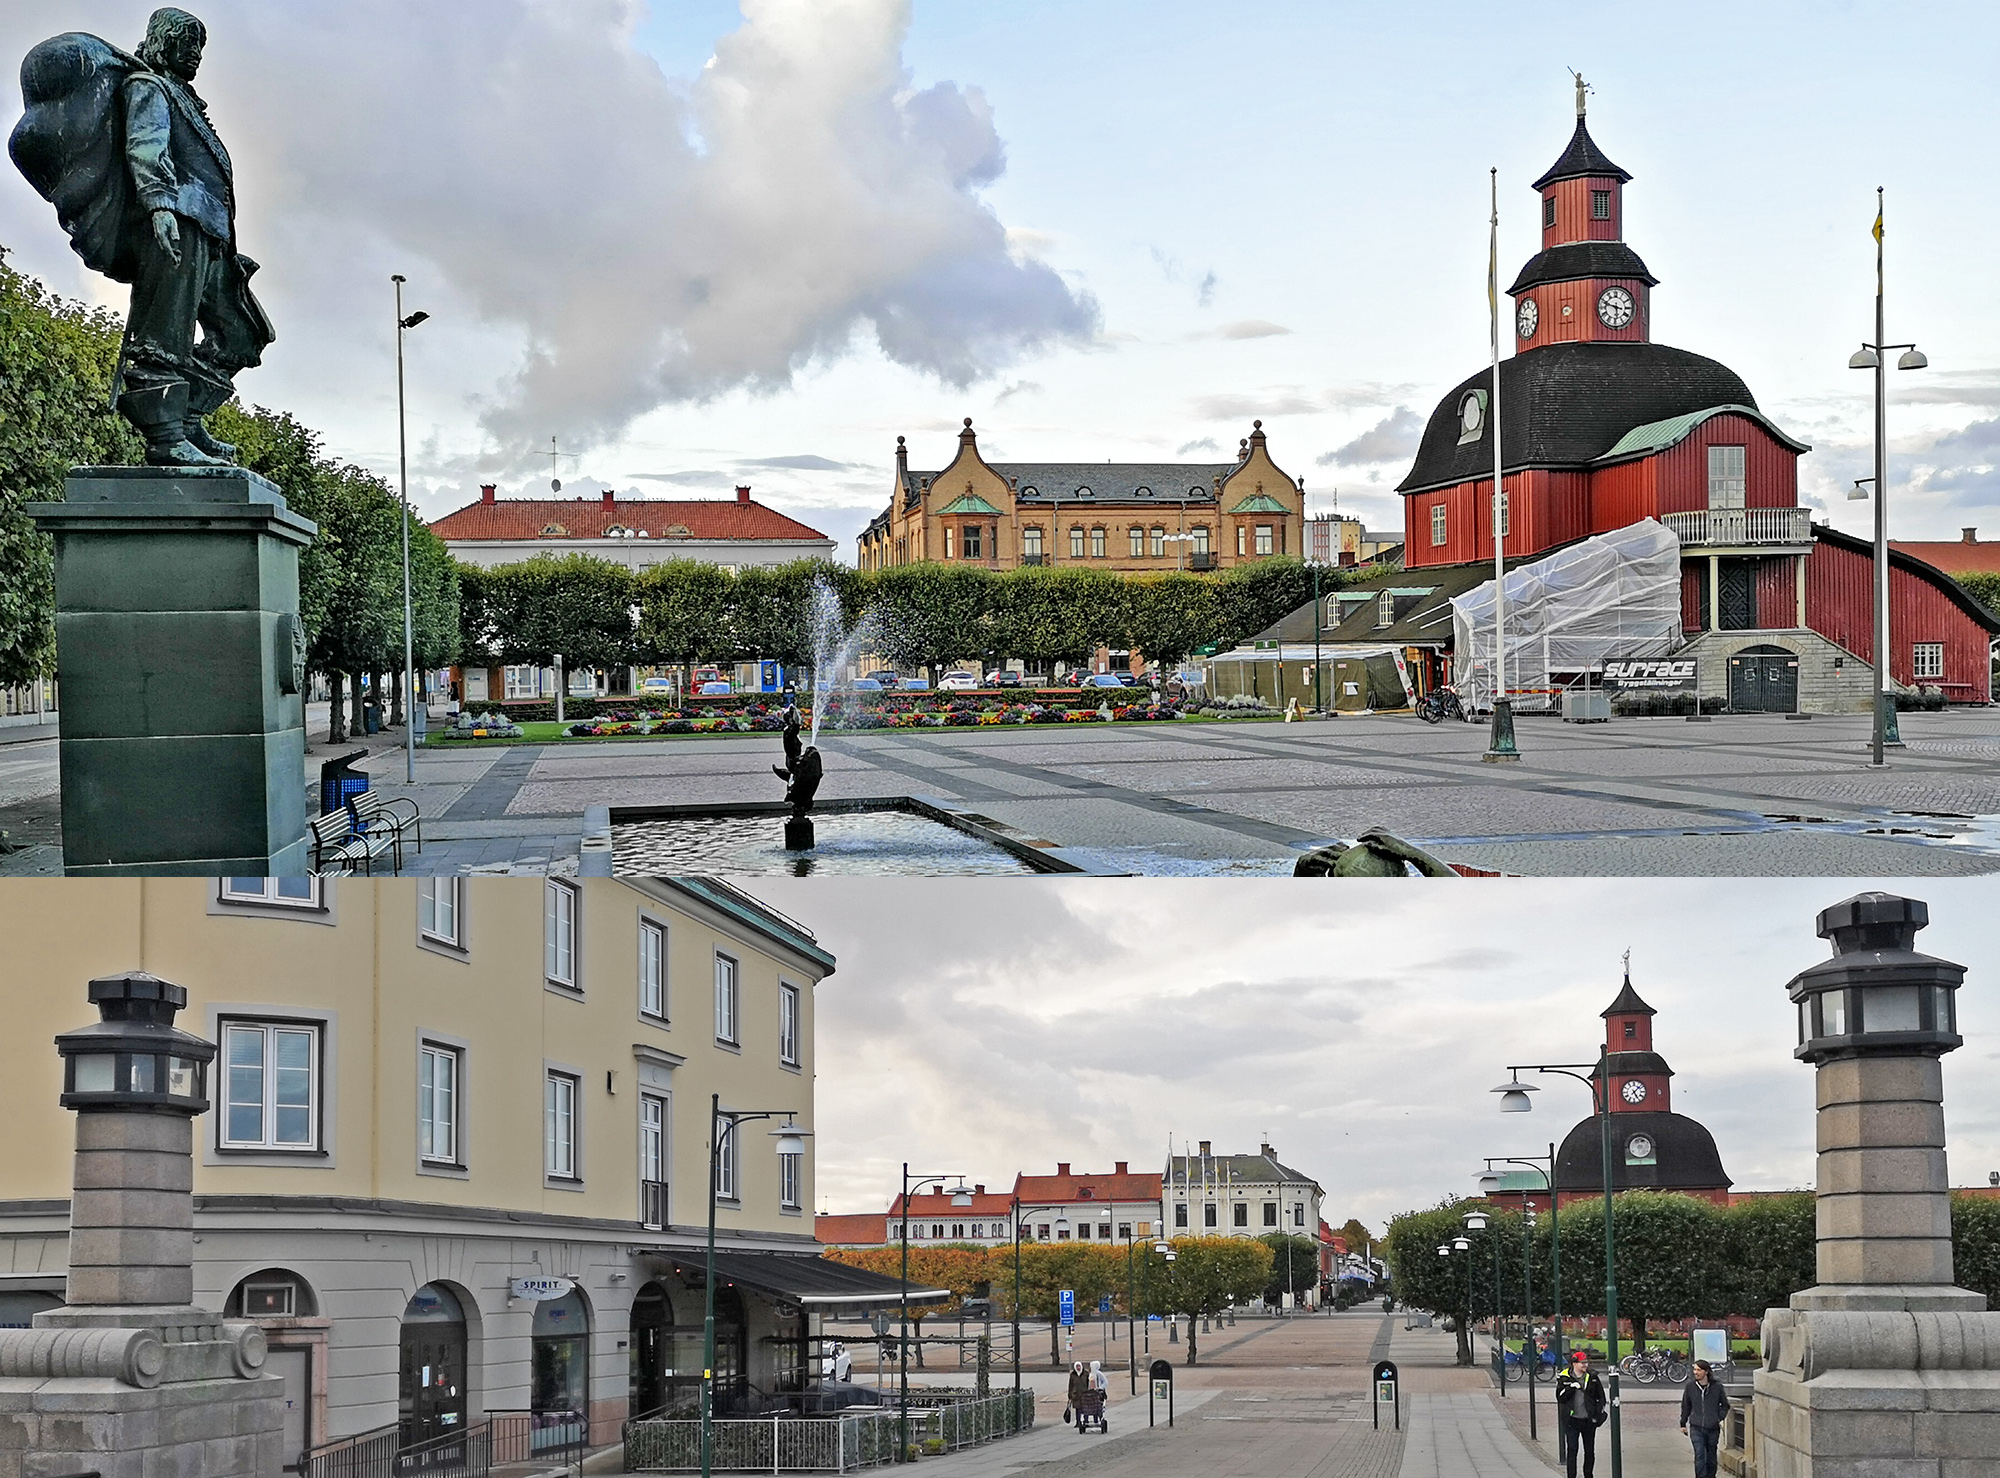 Är Nya stadens torg i Lidköping Sveriges vackraste torg?